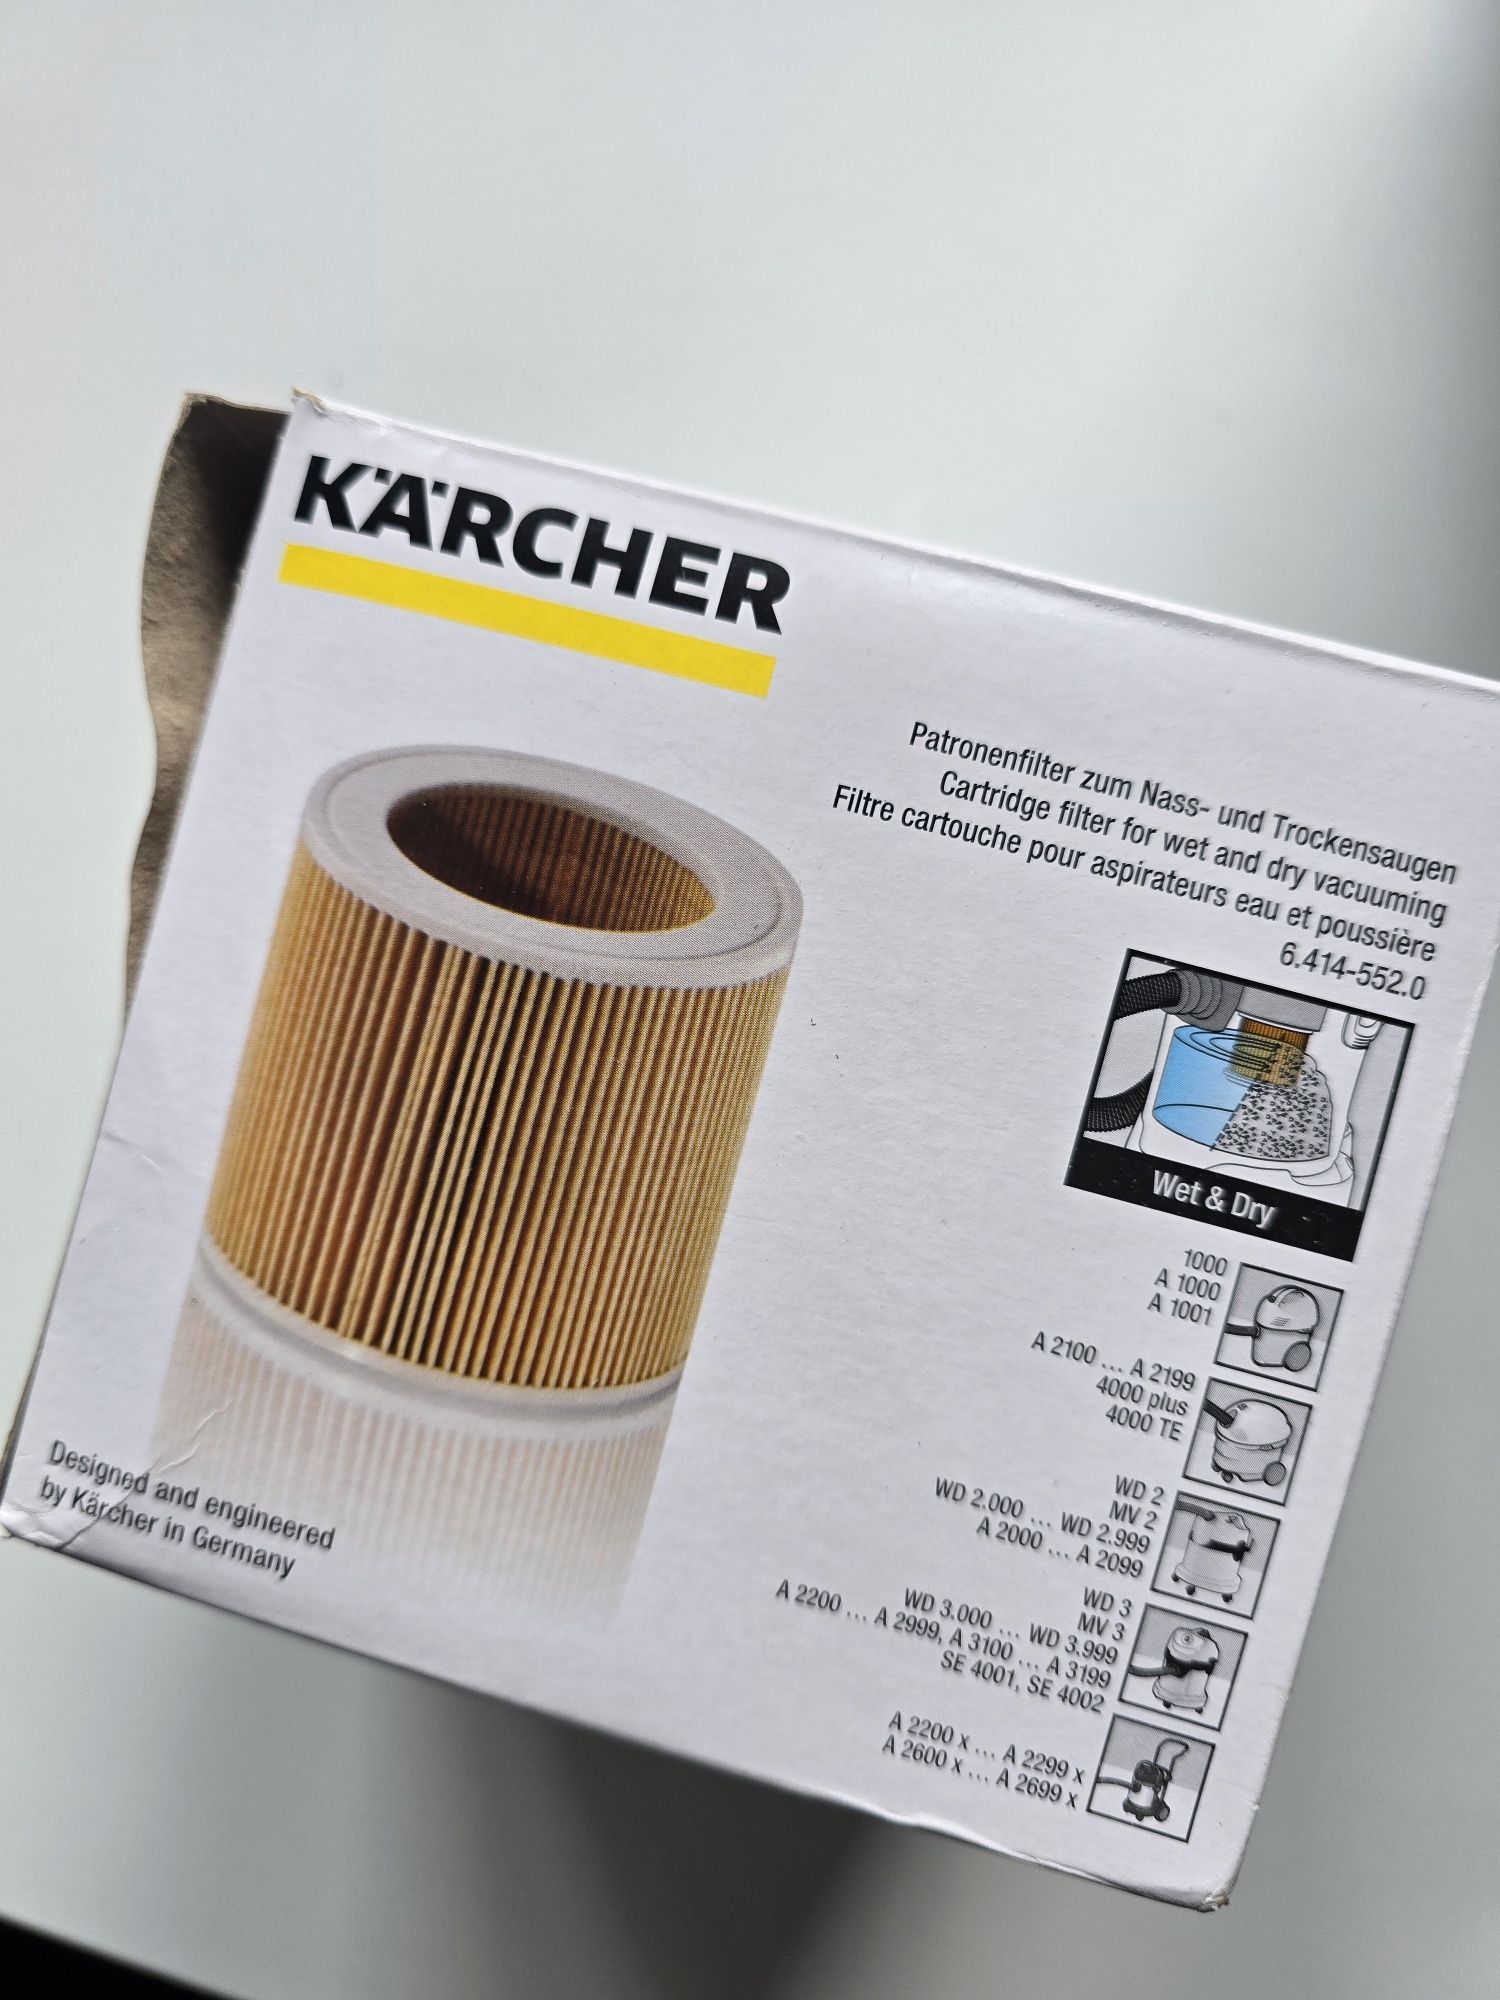 Filtr Karcher 6.414- 552.0